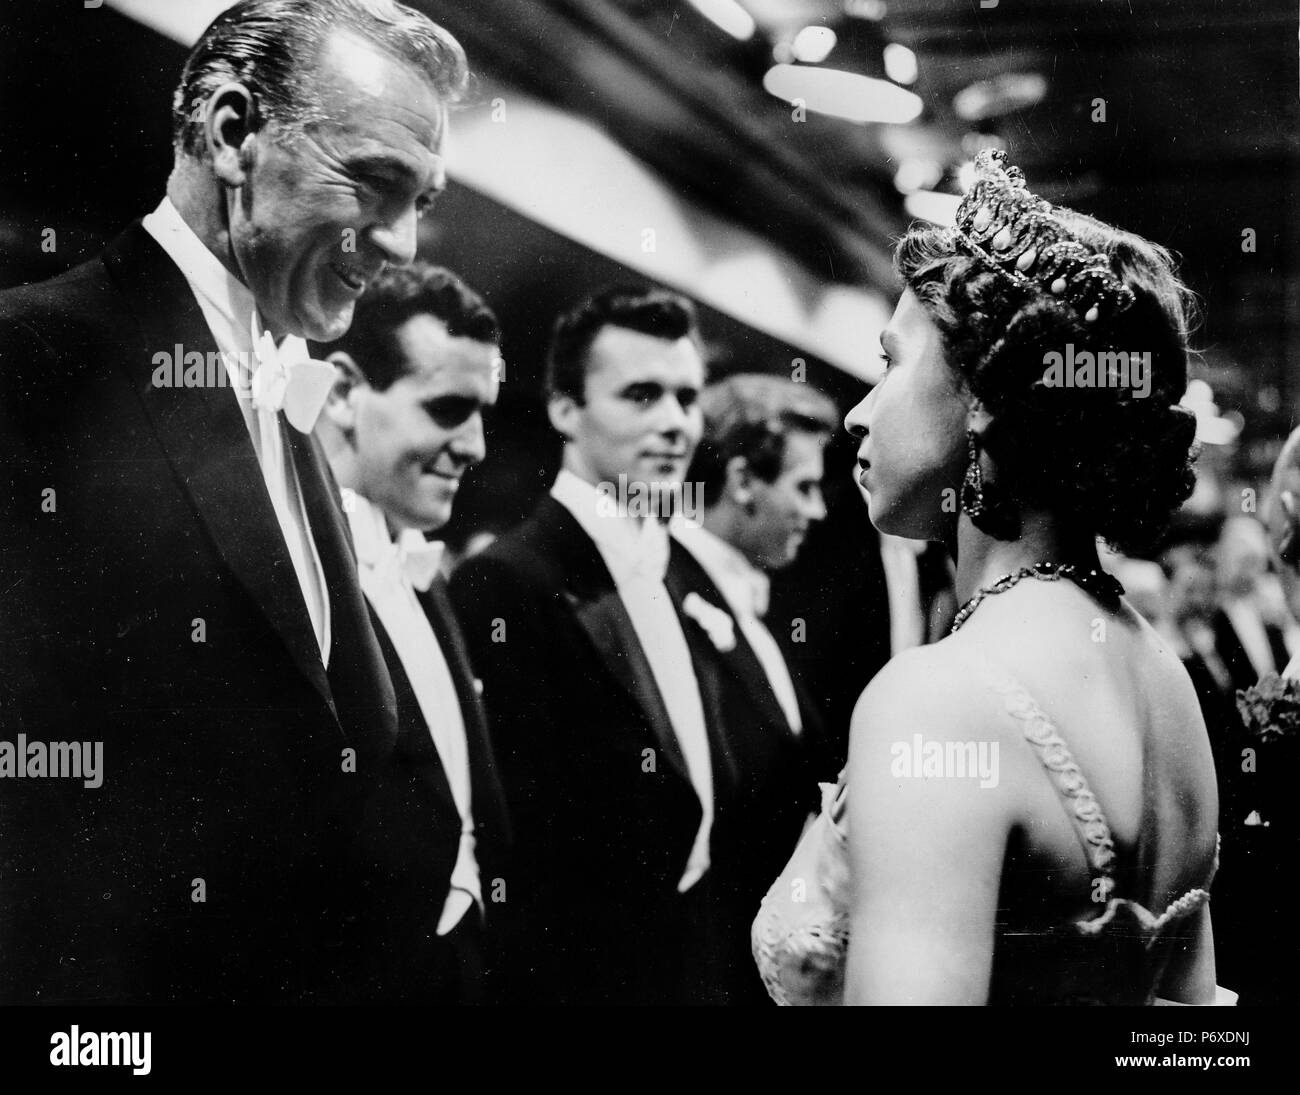 Gary Cooper, George cole, Dirk Bogarde rencontrer la reine Elisabeth II, théâtre de l'Odéon, Londres, 1953 Banque D'Images